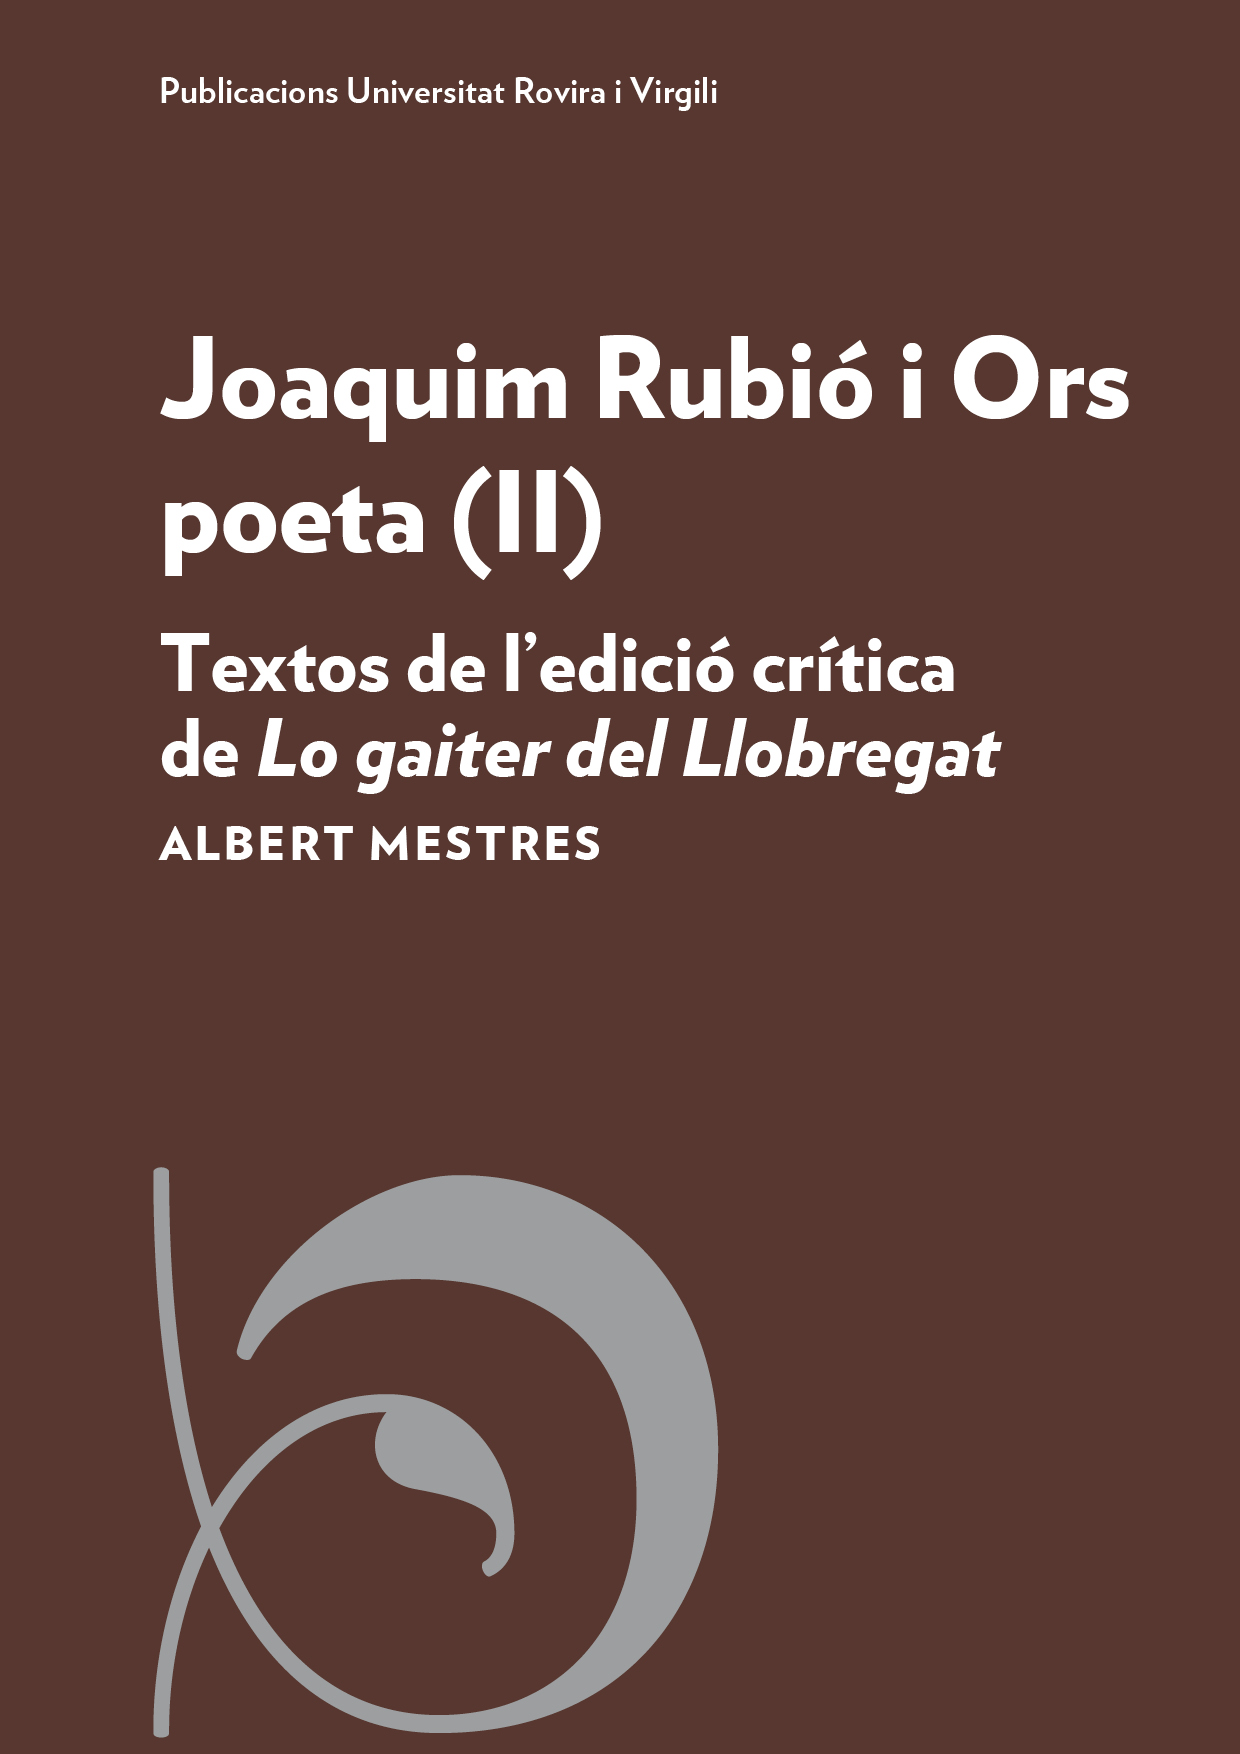 Joaquim RubiÃ³ i Ors poeta (II)